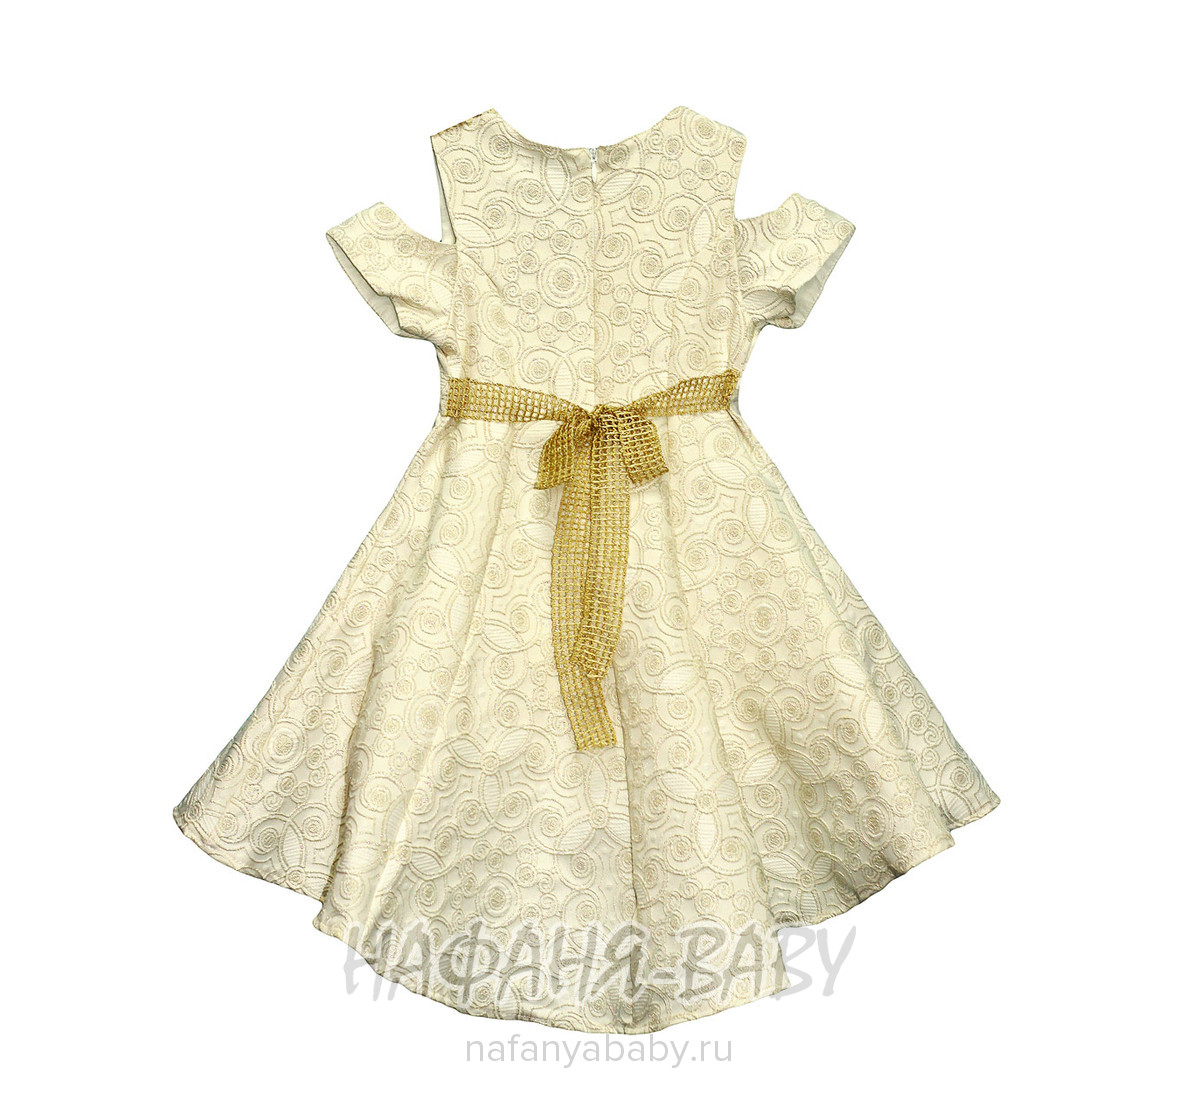 Детское нарядное платье SOFIA, купить в интернет магазине Нафаня. арт: 2379.